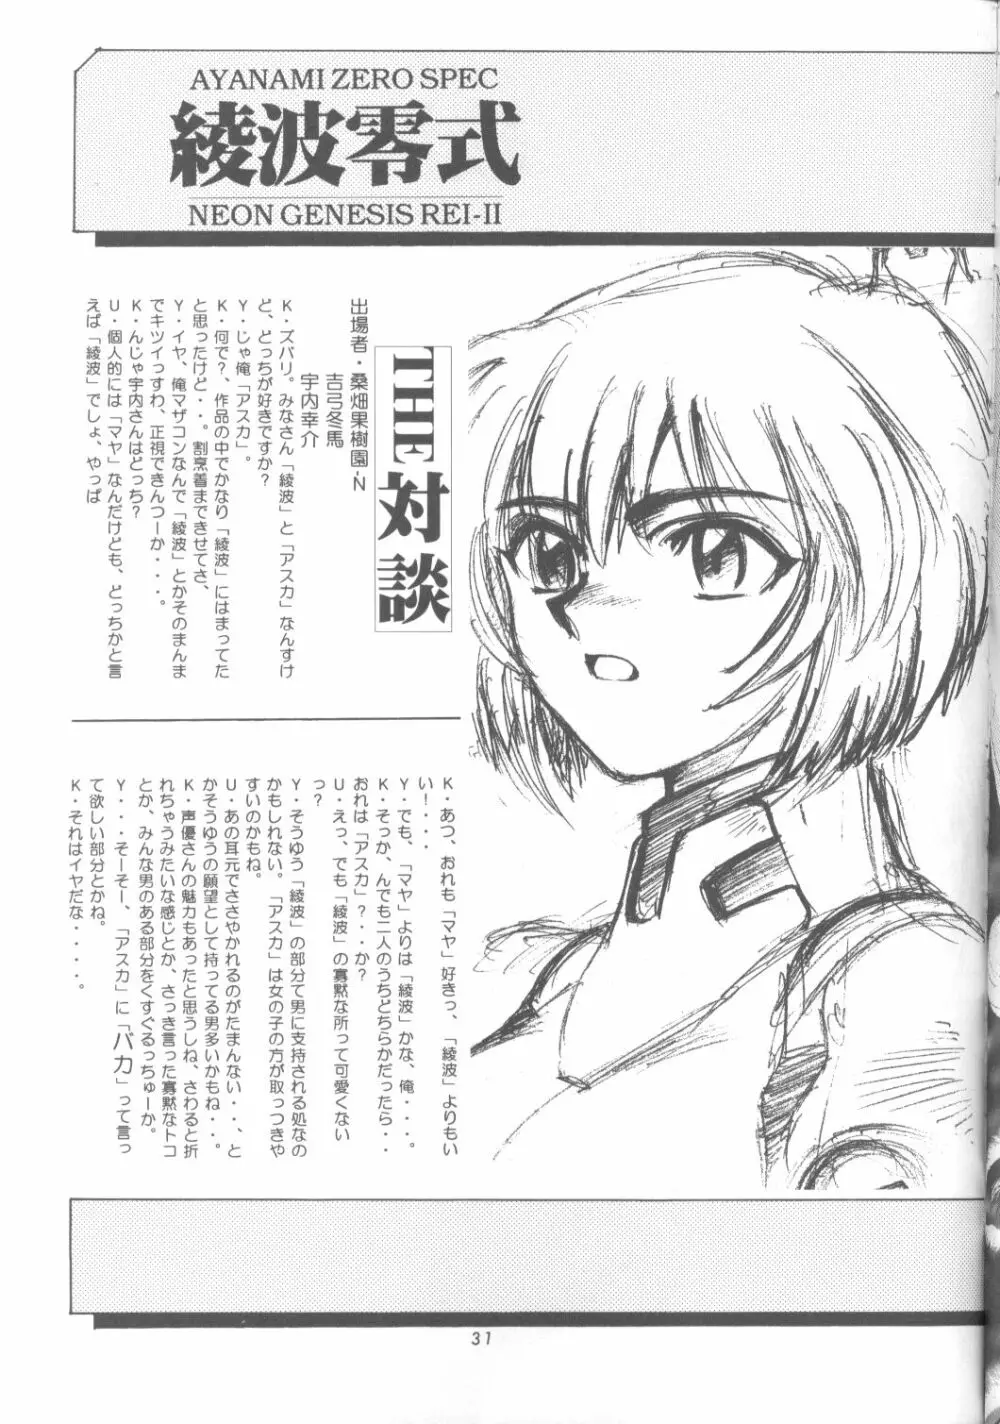 綾波零式 Ayanami Zero Spec 30ページ